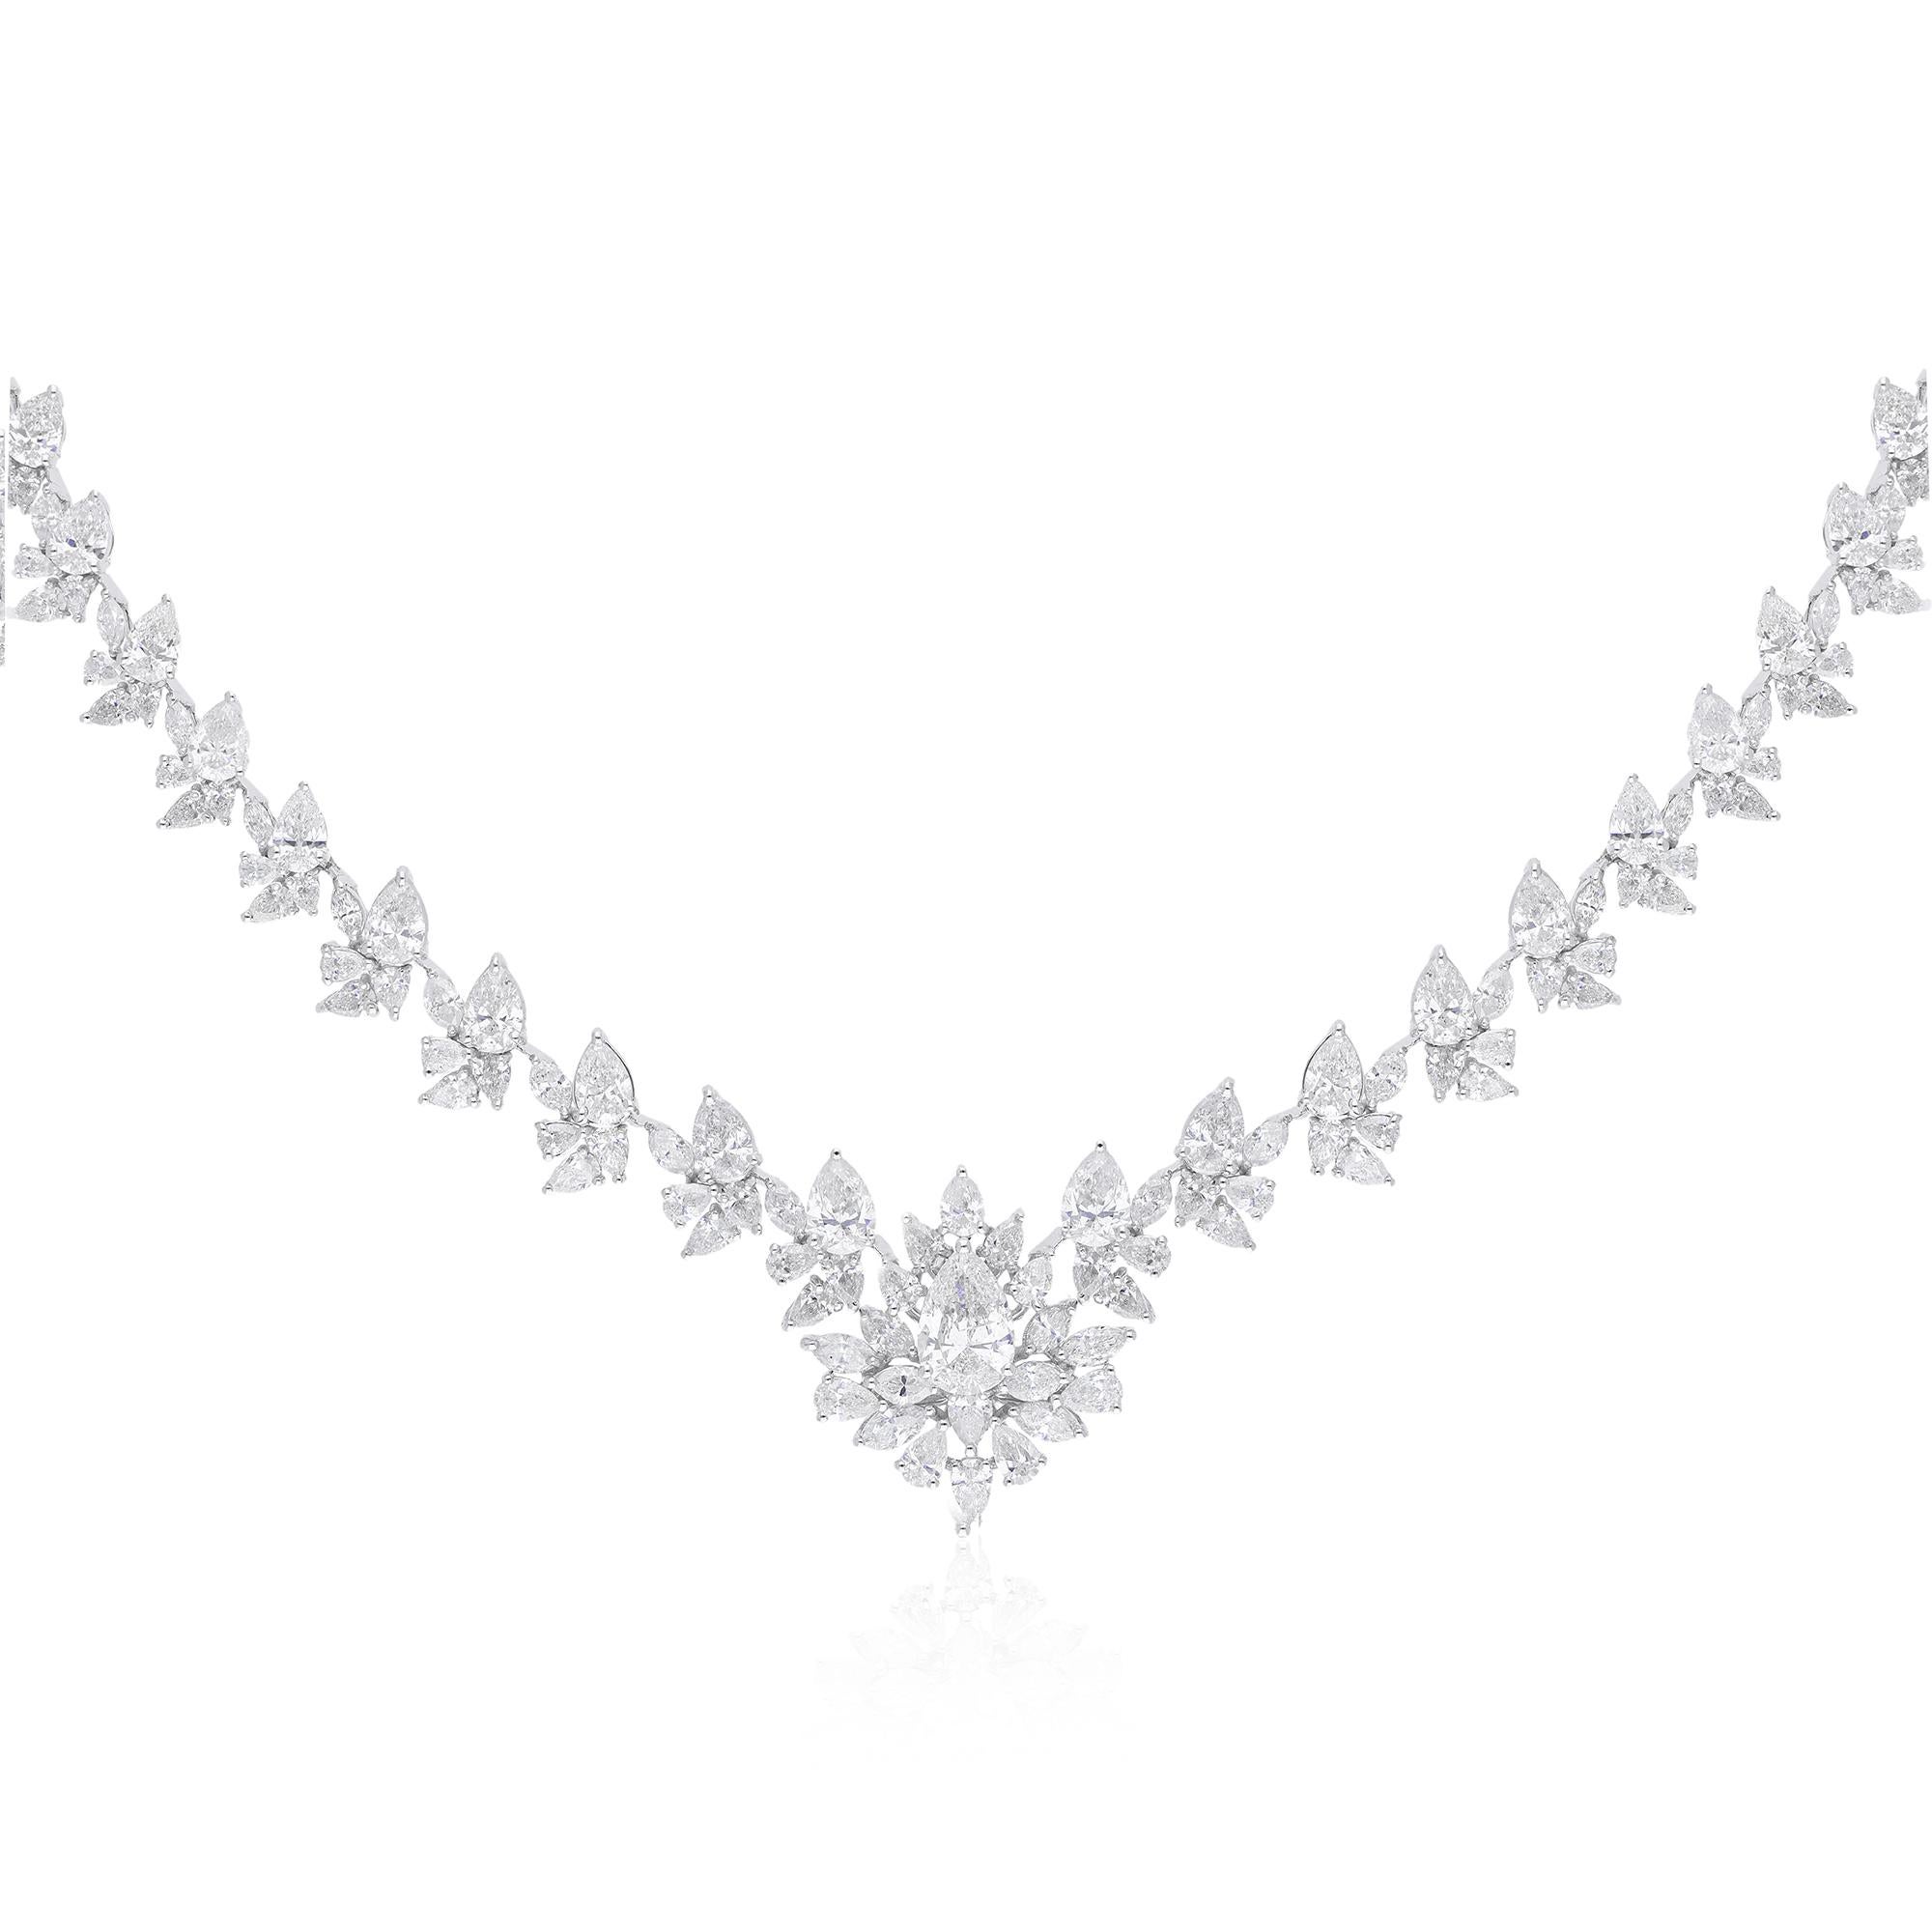 Das Herzstück dieses exquisiten Colliers ist ein atemberaubender Diamant im Marquise-Schliff von 17,24 Karat, der sorgfältig wegen seiner unvergleichlichen Brillanz und Klarheit ausgewählt wurde. Der Birnen-Marquise-Schliff, der für seine längliche